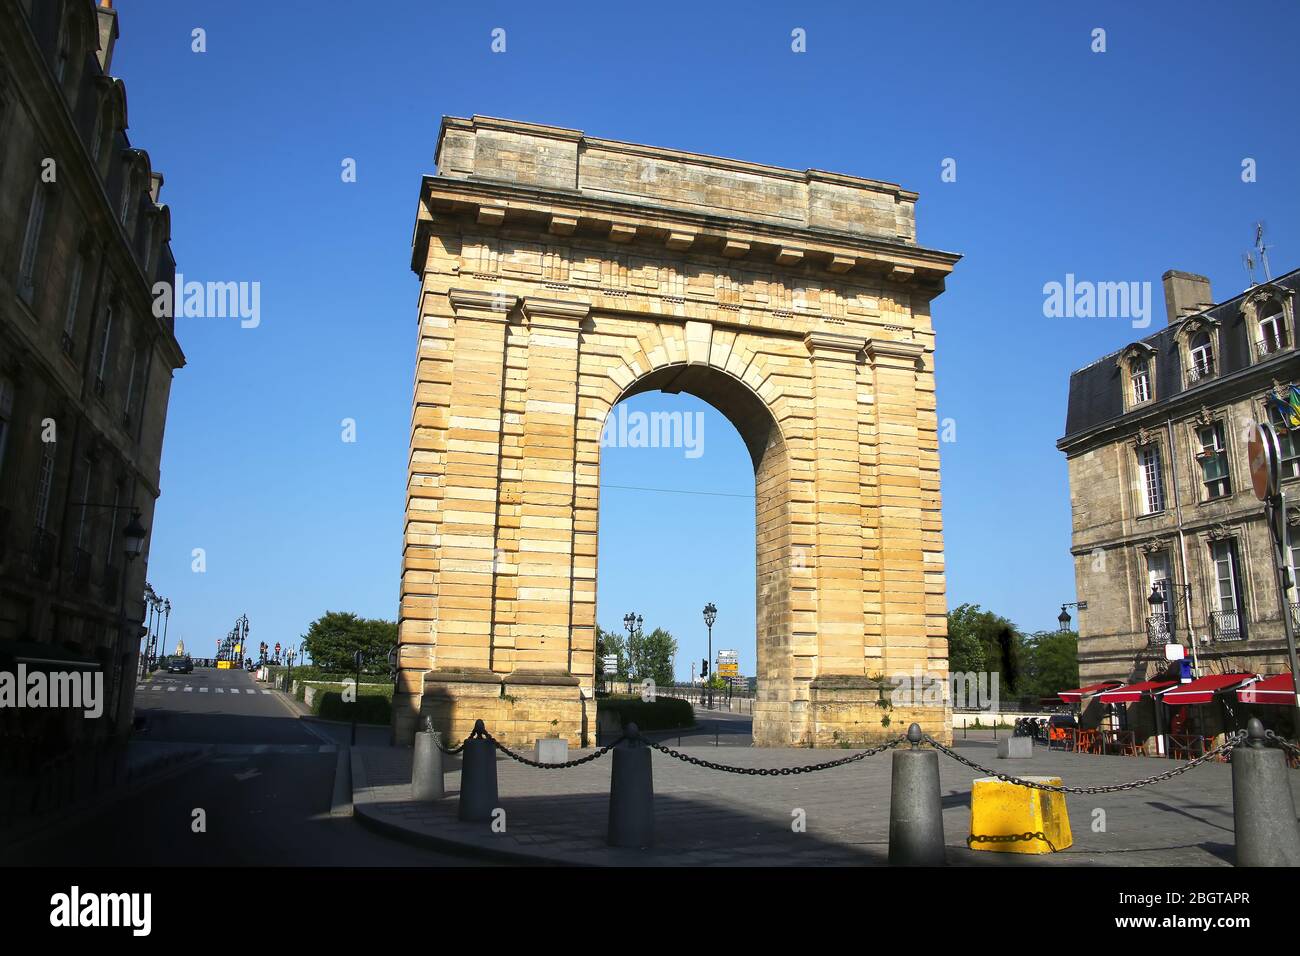 Porte d'Aquitaine ist ein historischer Bogen auf dem Place de la Victoire. Es liegt am Ende der Rue de Catherine, der Einkaufsstraße. Bordeaux, Frankreich. Stockfoto